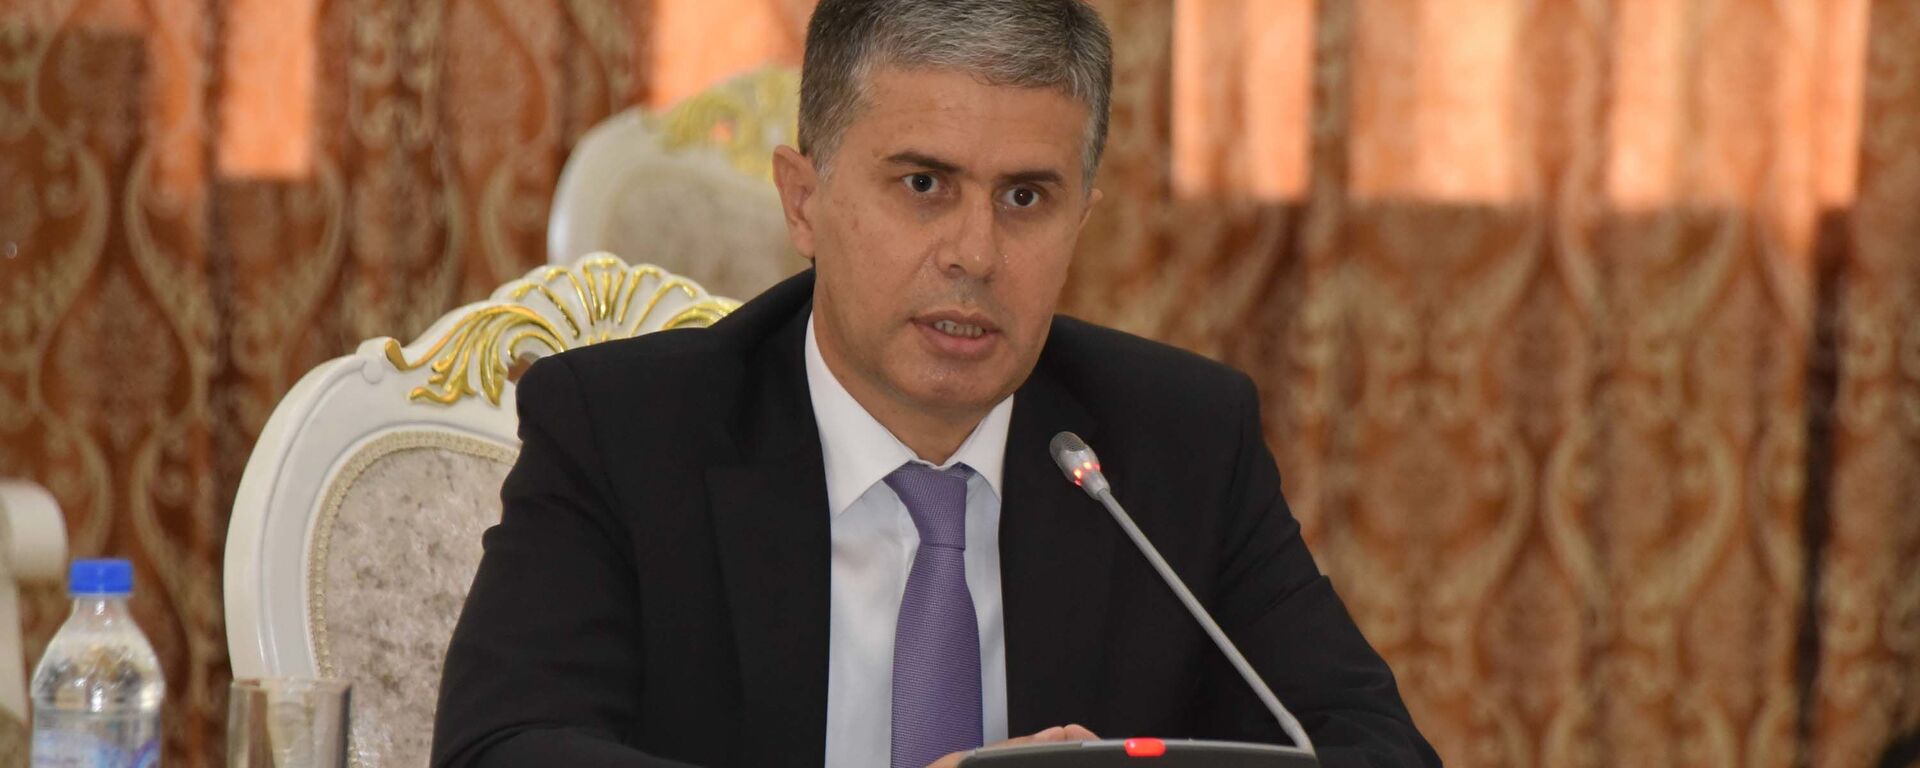 Министр экономики Таджикистана Завки Завкизода - Sputnik Таджикистан, 1920, 06.10.2021